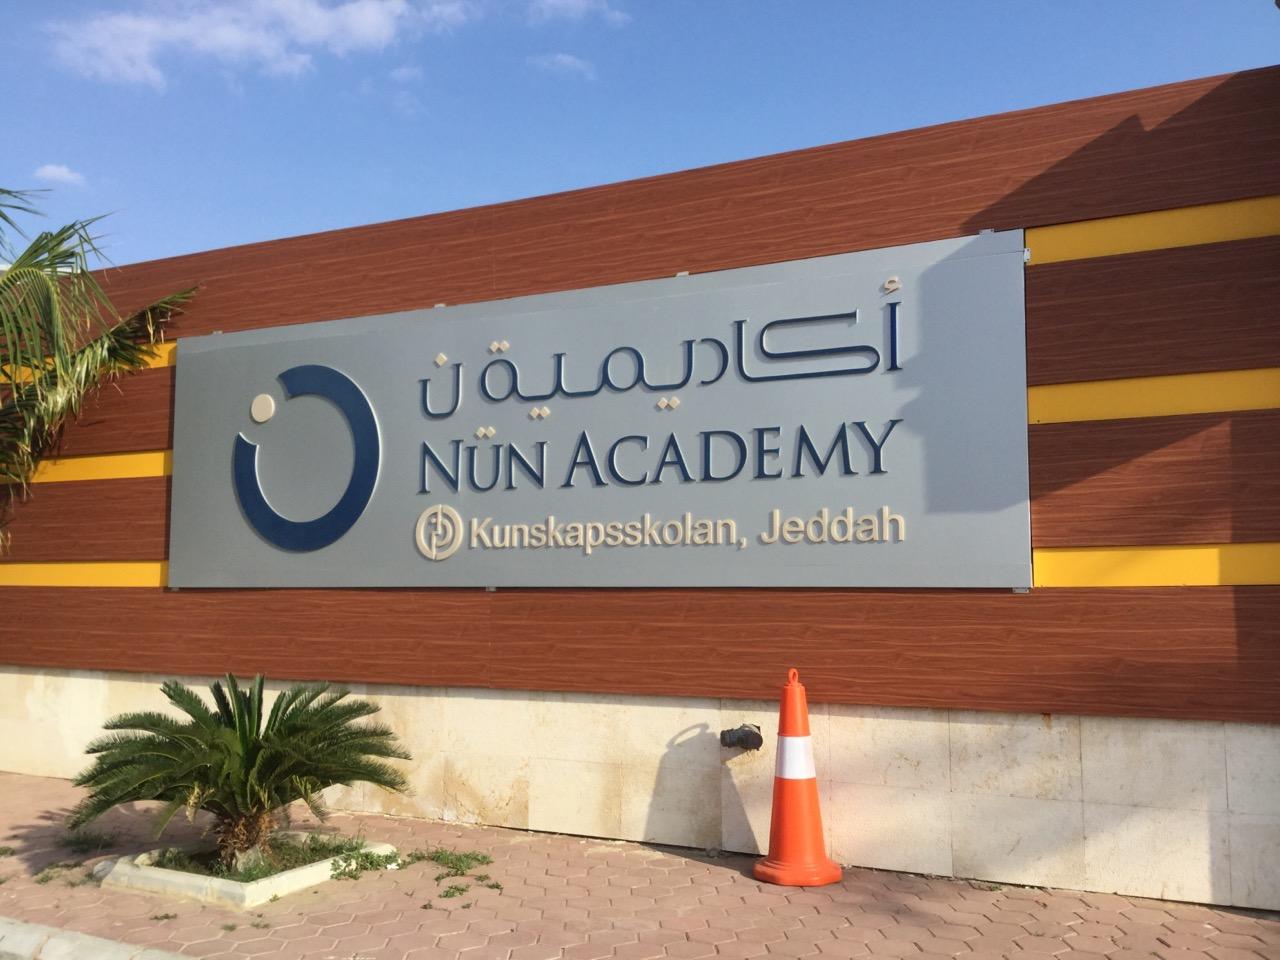 Nün Academy ligger i saudiska staden Jeddah och har funnits i åtta år. Skolan är internationell och här går ungefär 1 000 elever, men studier i koranen är obligatoriska, visar vår granskning. 